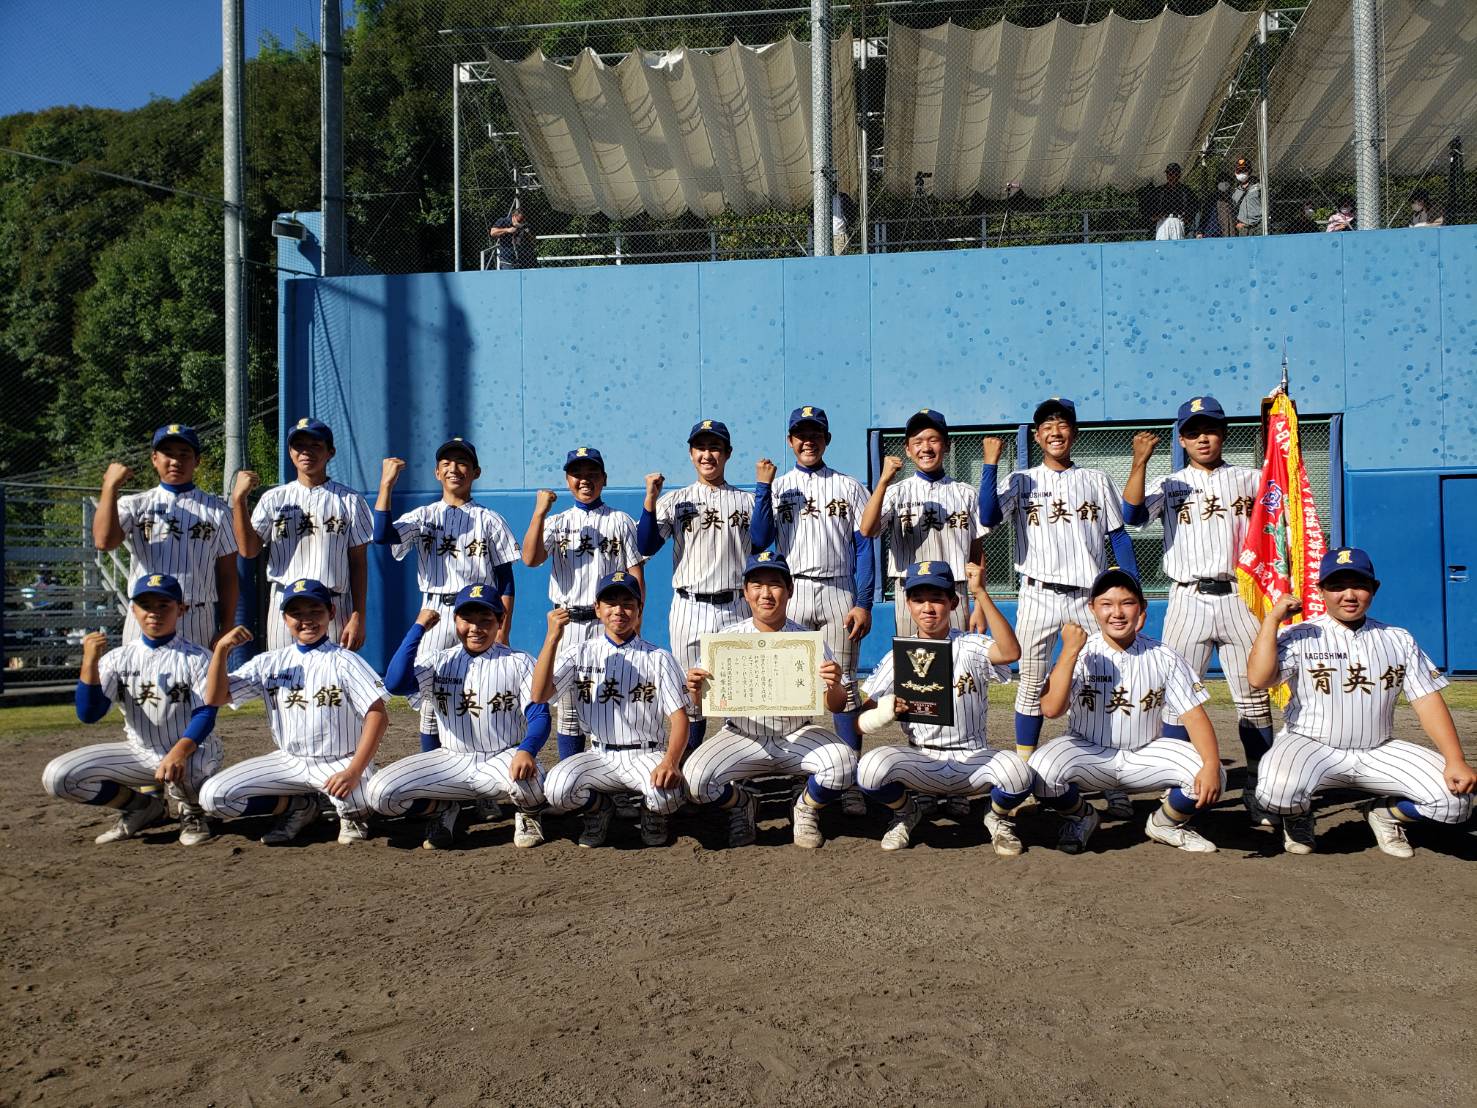 文部 科学 大臣 杯 第 13 回 全日本 少年 春季 軟式 野球 大会 2022